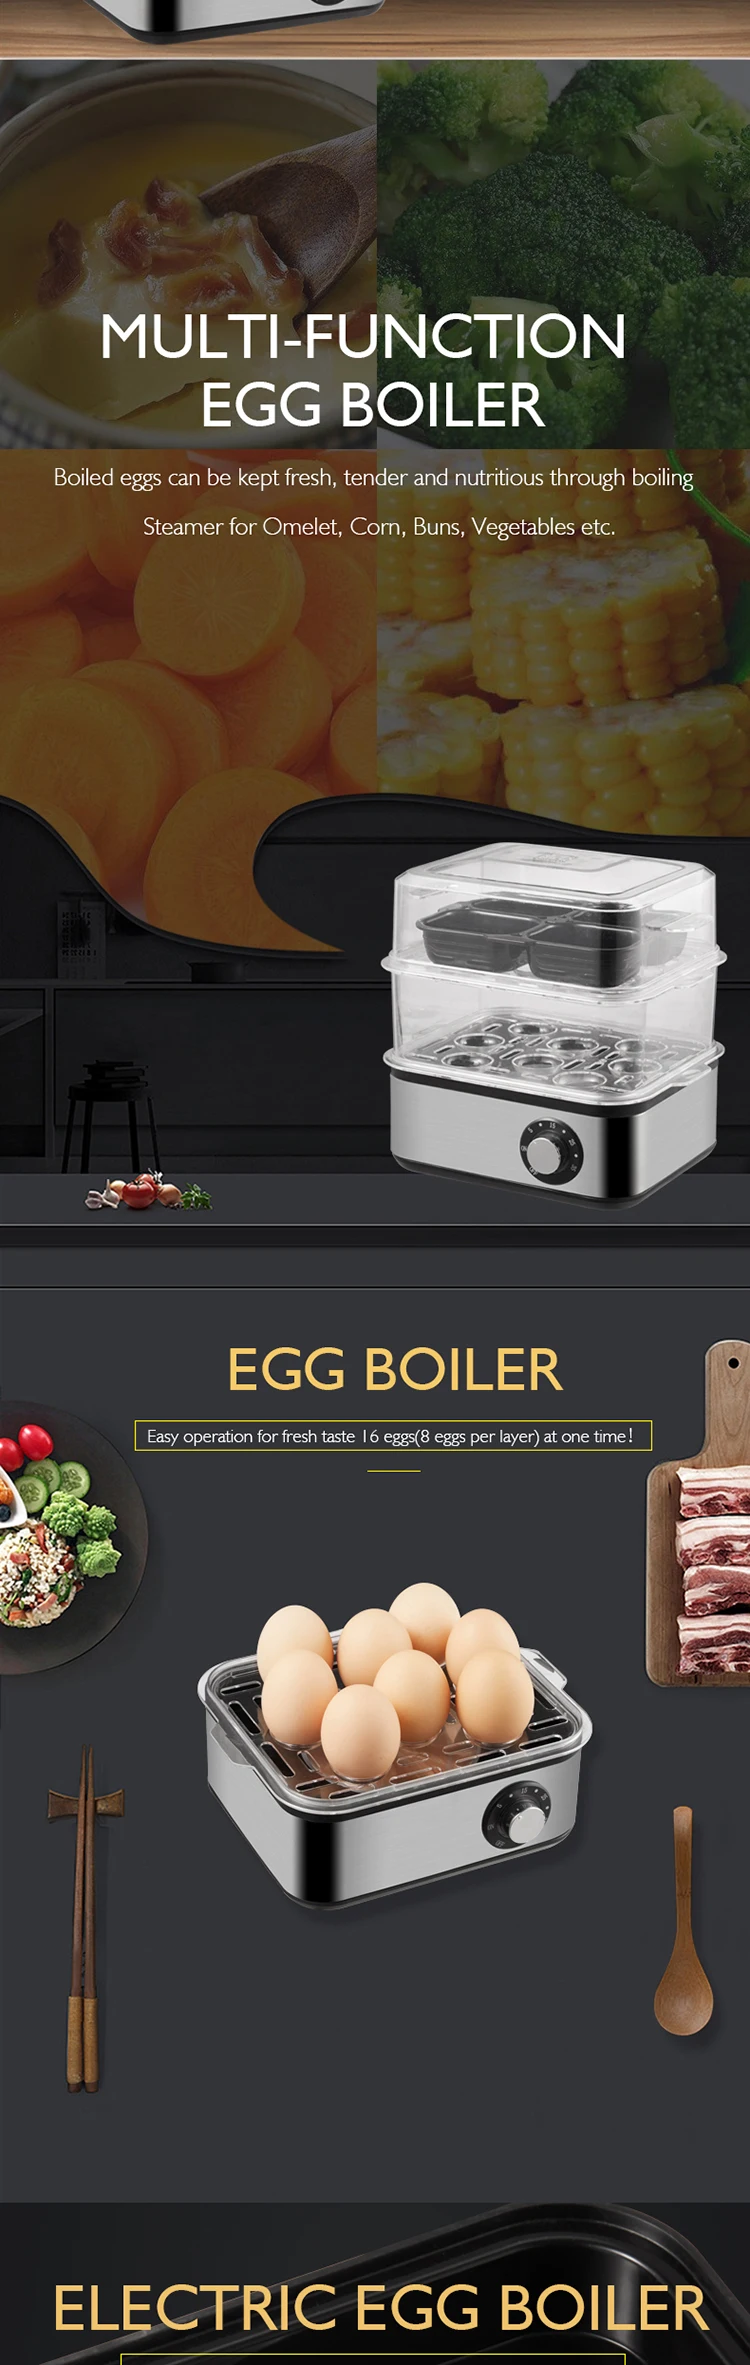 Egg-Boiler_02.jpg